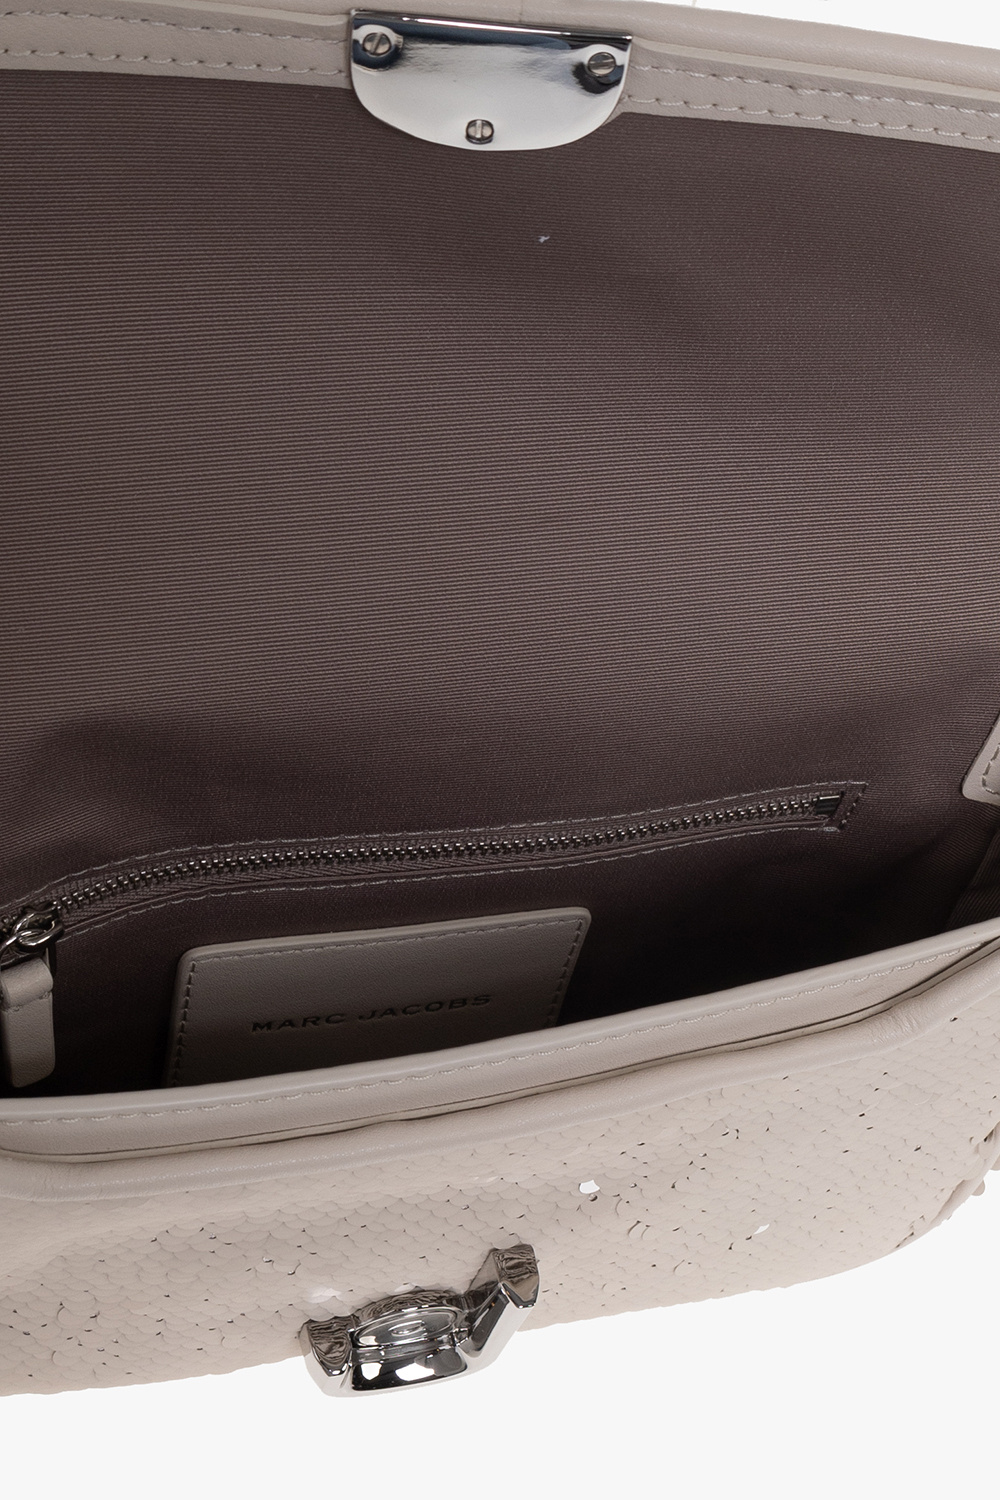 Marc Jacobs ‘The Sequin J Marc’ shoulder bag